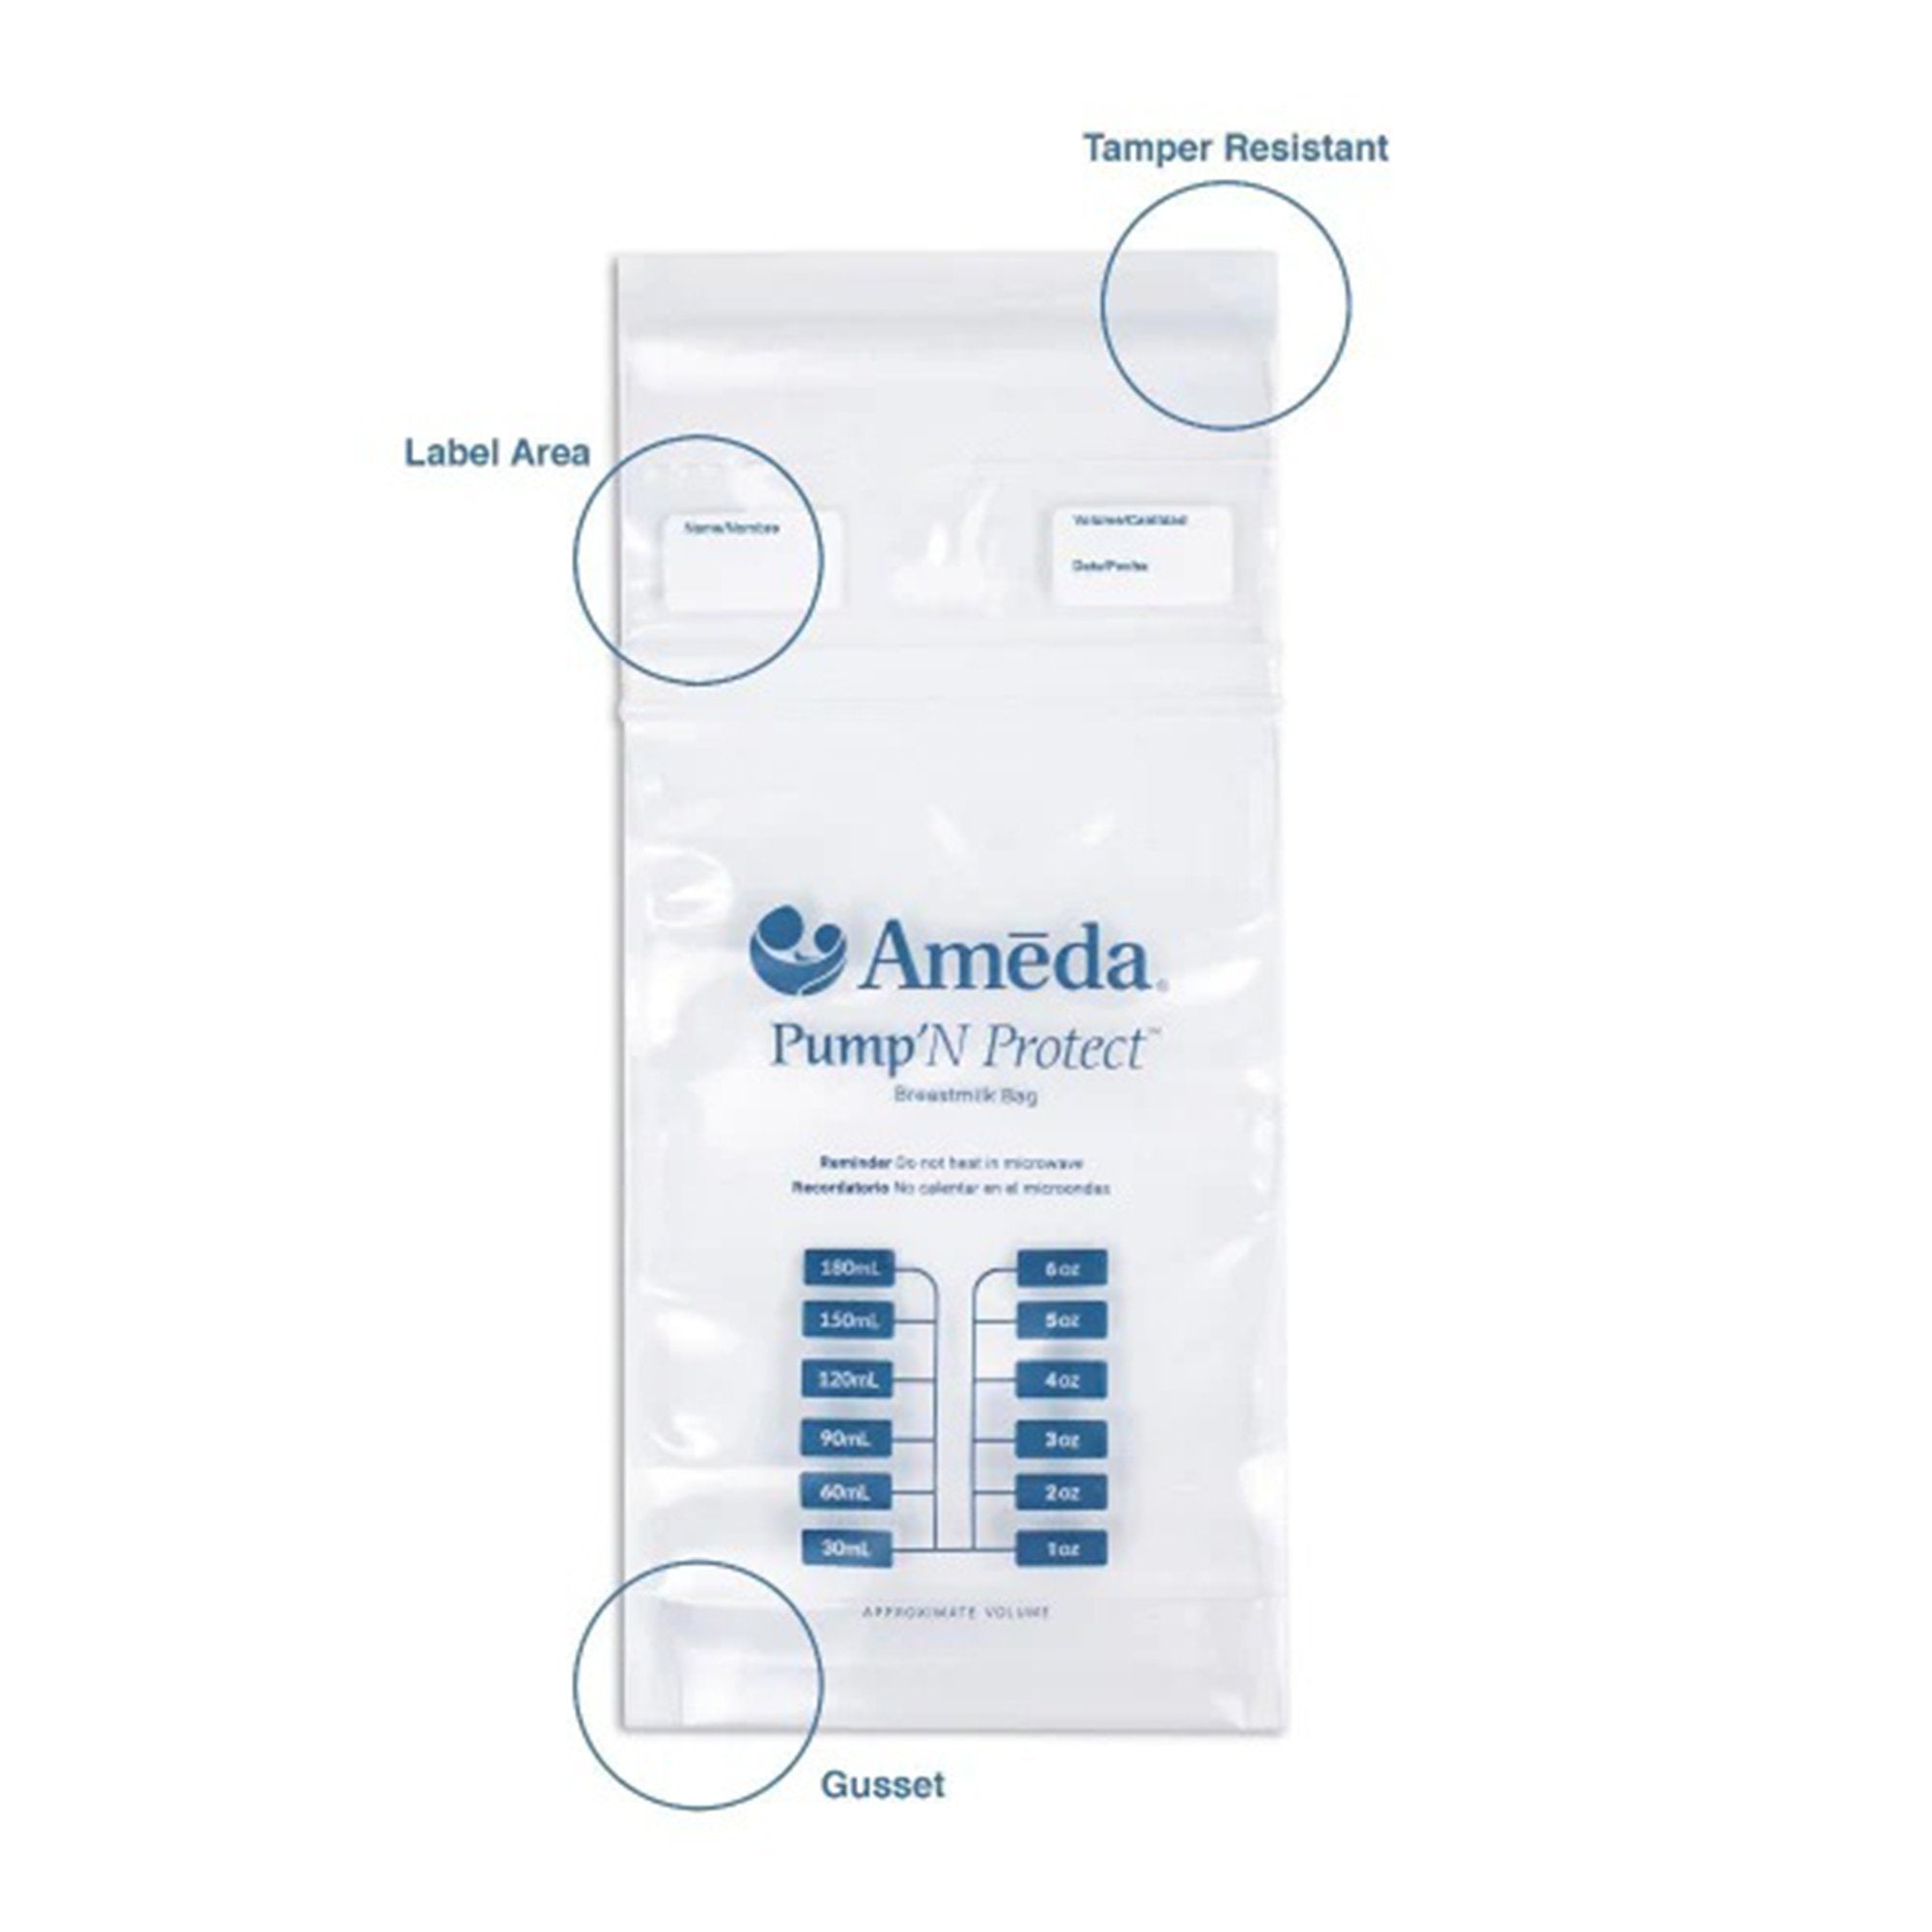 Breast Milk Storage Bag Ameda Pump 'N Protect 6 oz. Plastic